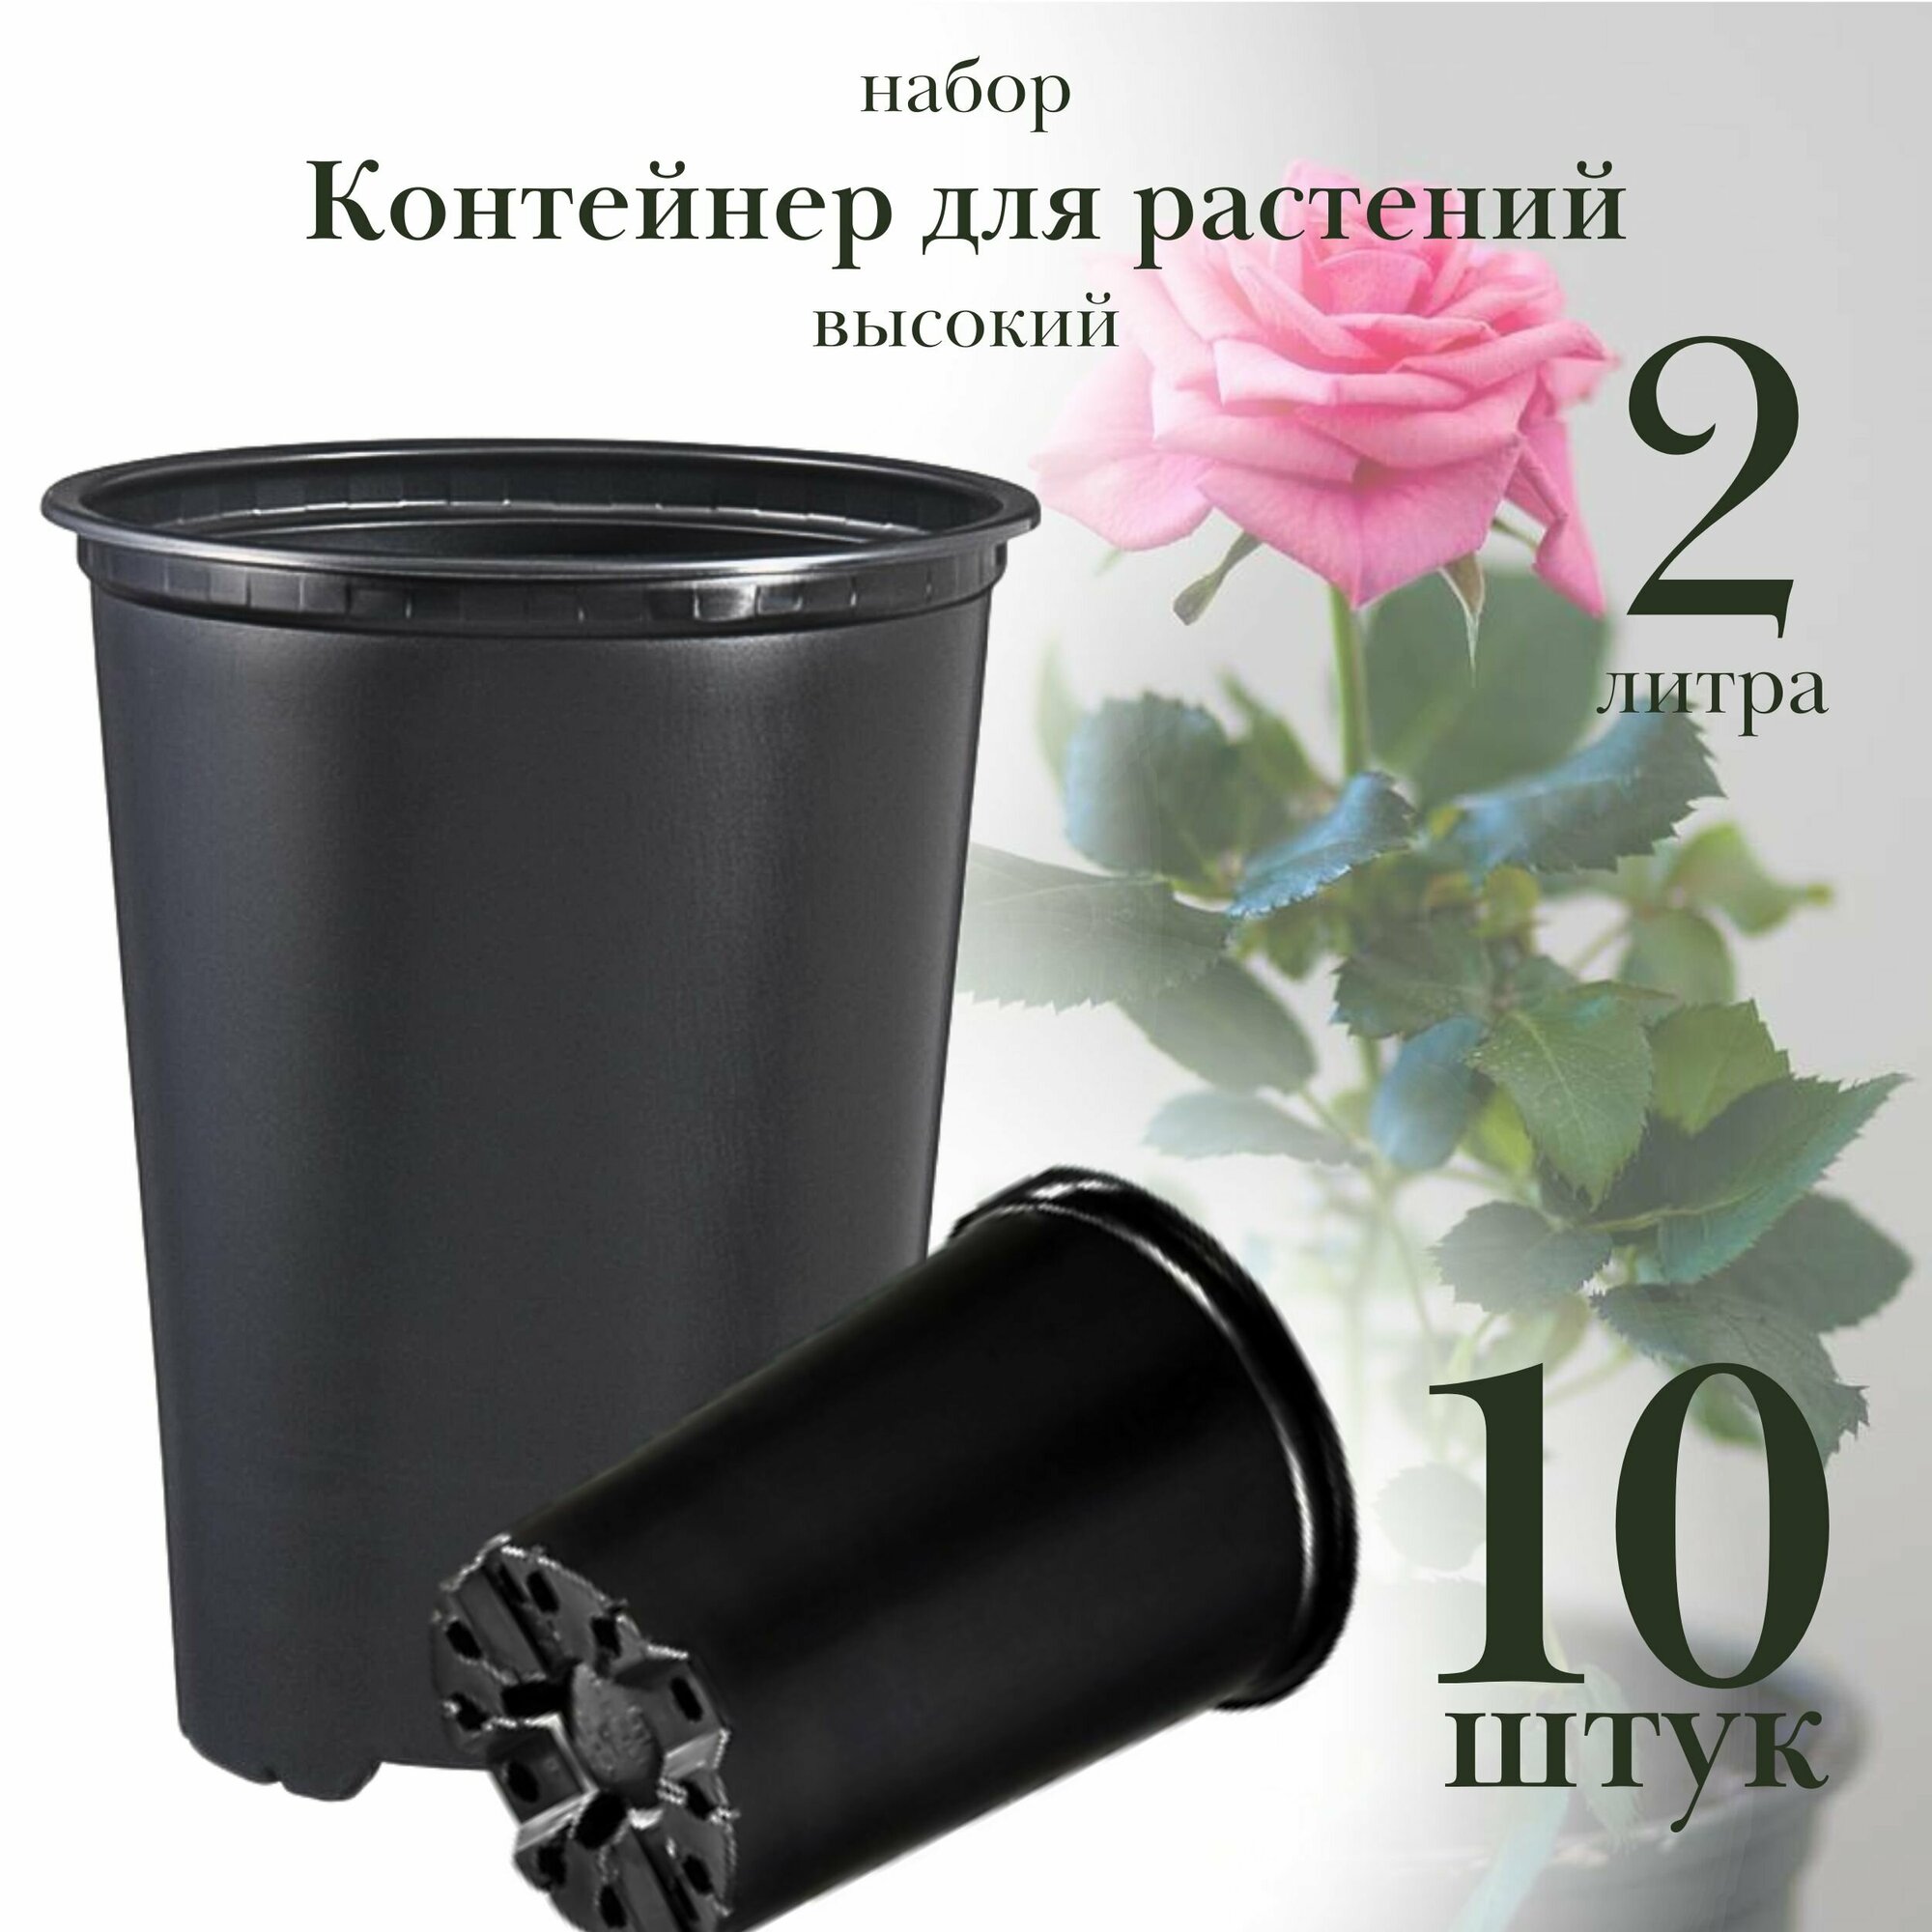 Контейнер для растений 2 литра 14х18 см высокий пластик набор 10 штук